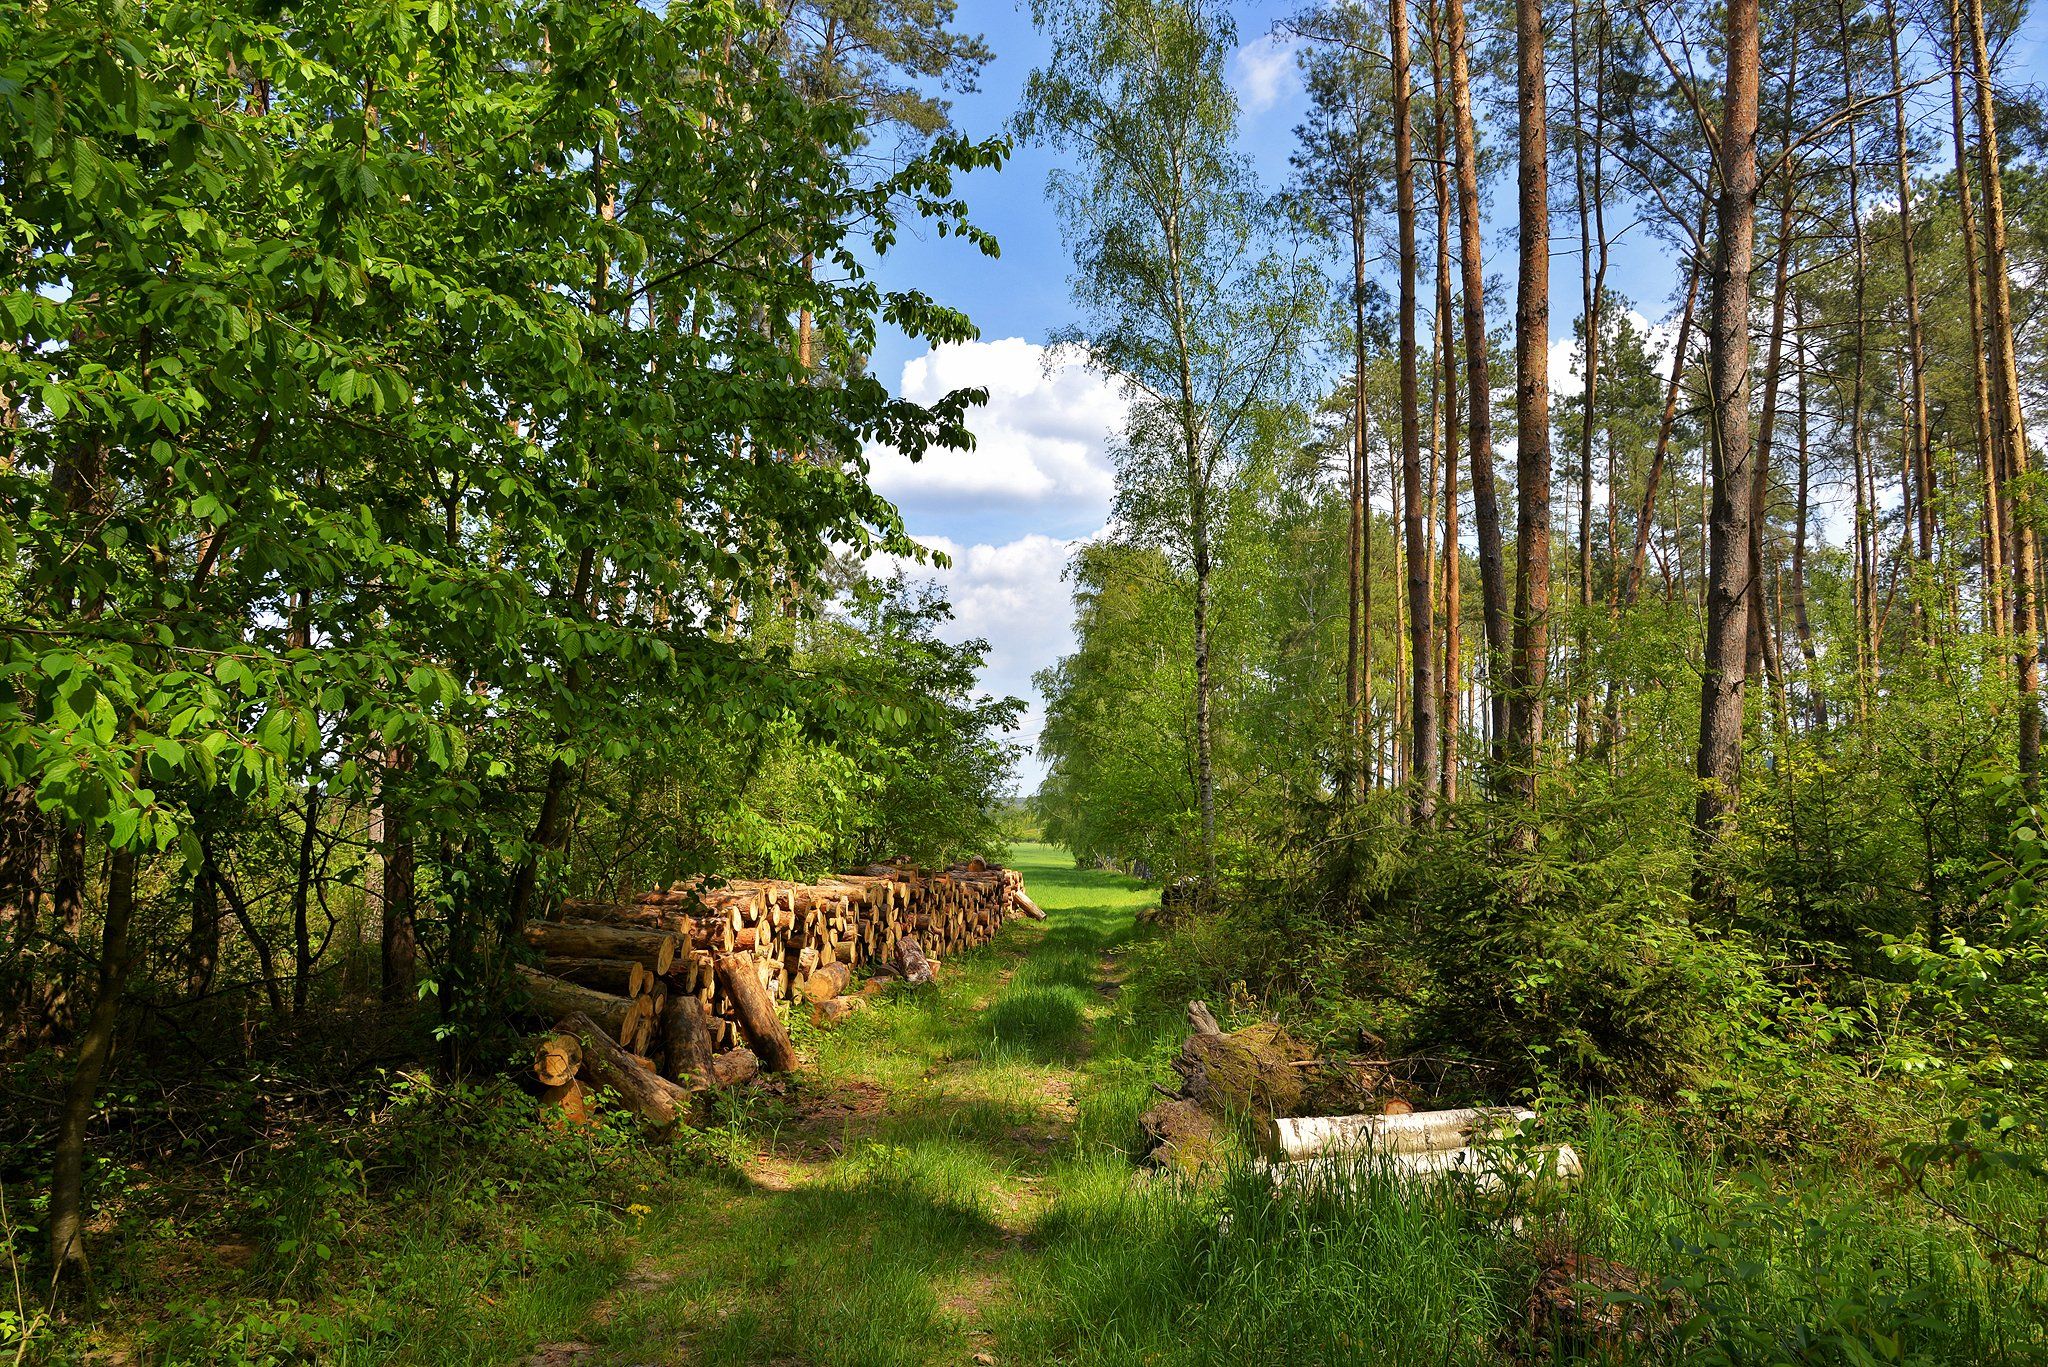 walk in the woods trees path road spring dranikowski szyszkin blue sky green nature nikon wood, Radoslaw Dranikowski